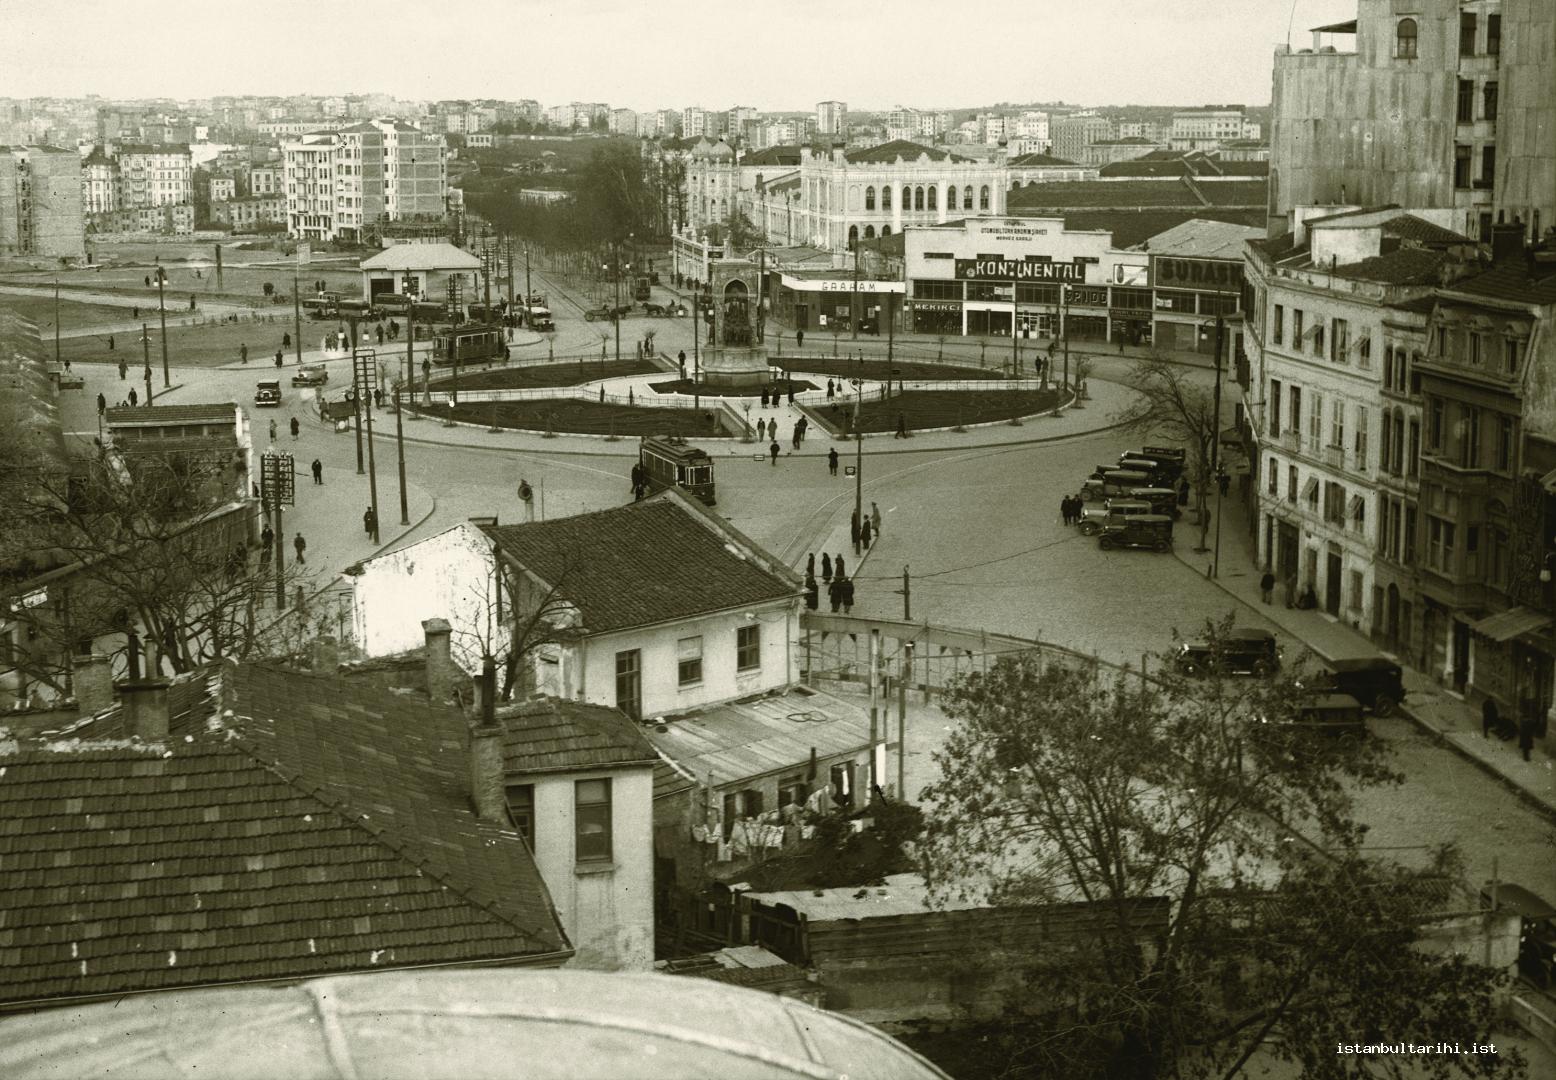 14- Taksim Square in 1930s. The Barracks of Artillerymen (Topçu Kışlası) was still in its place.